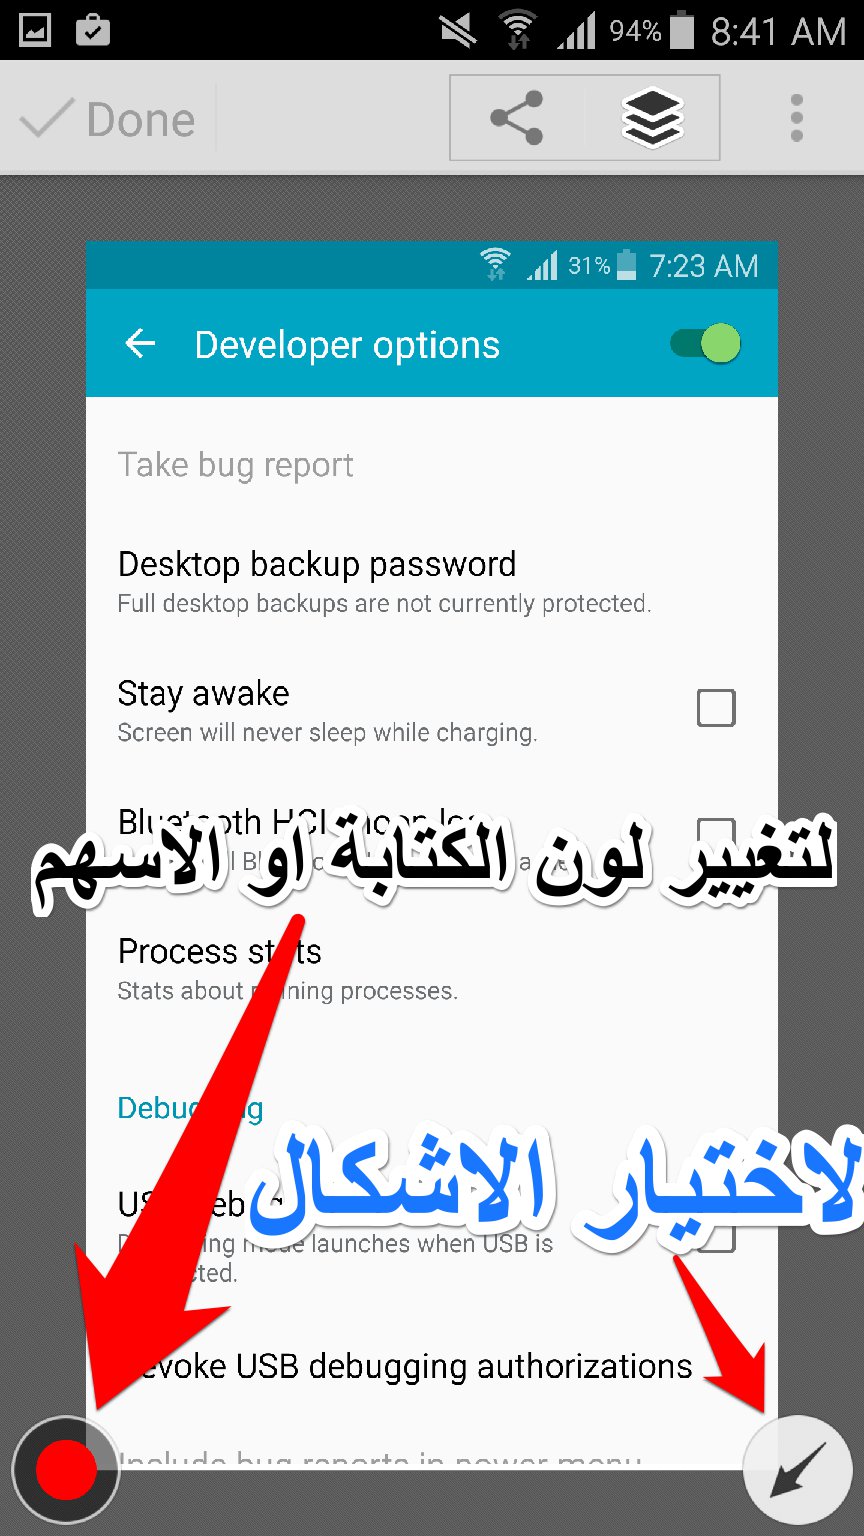 تطبيق Skitch لاضافة اسهم للصور وتشويش اجزاء منها والكتابة بالعربية | بحرية درويد